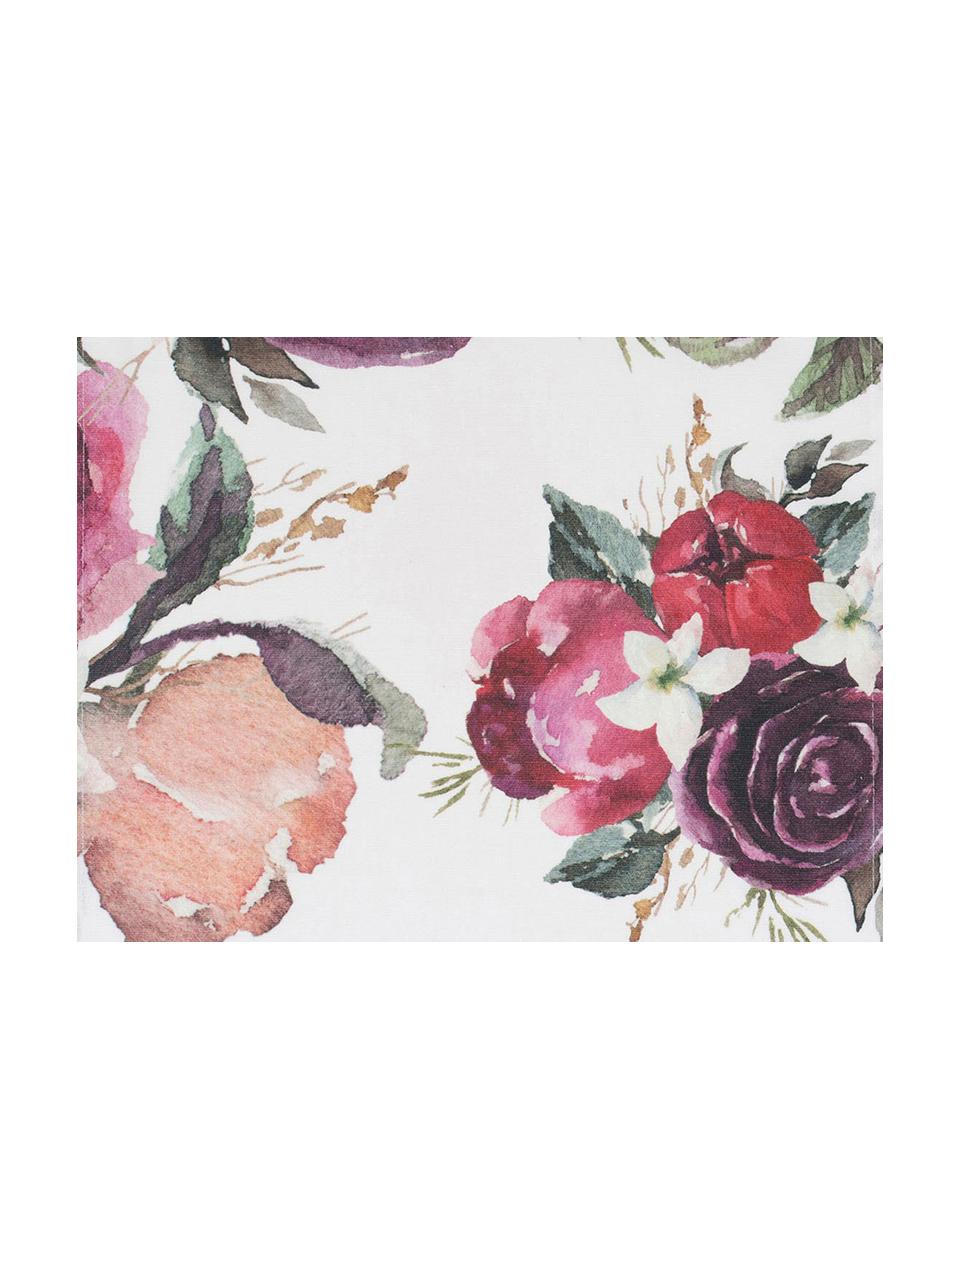 Baumwoll-Tischsets Florisia mit Blumenmuster, 2 Stück, 100% Baumwolle, Rosa, Weiss, Lila, Grün, B 38 x L 50 cm